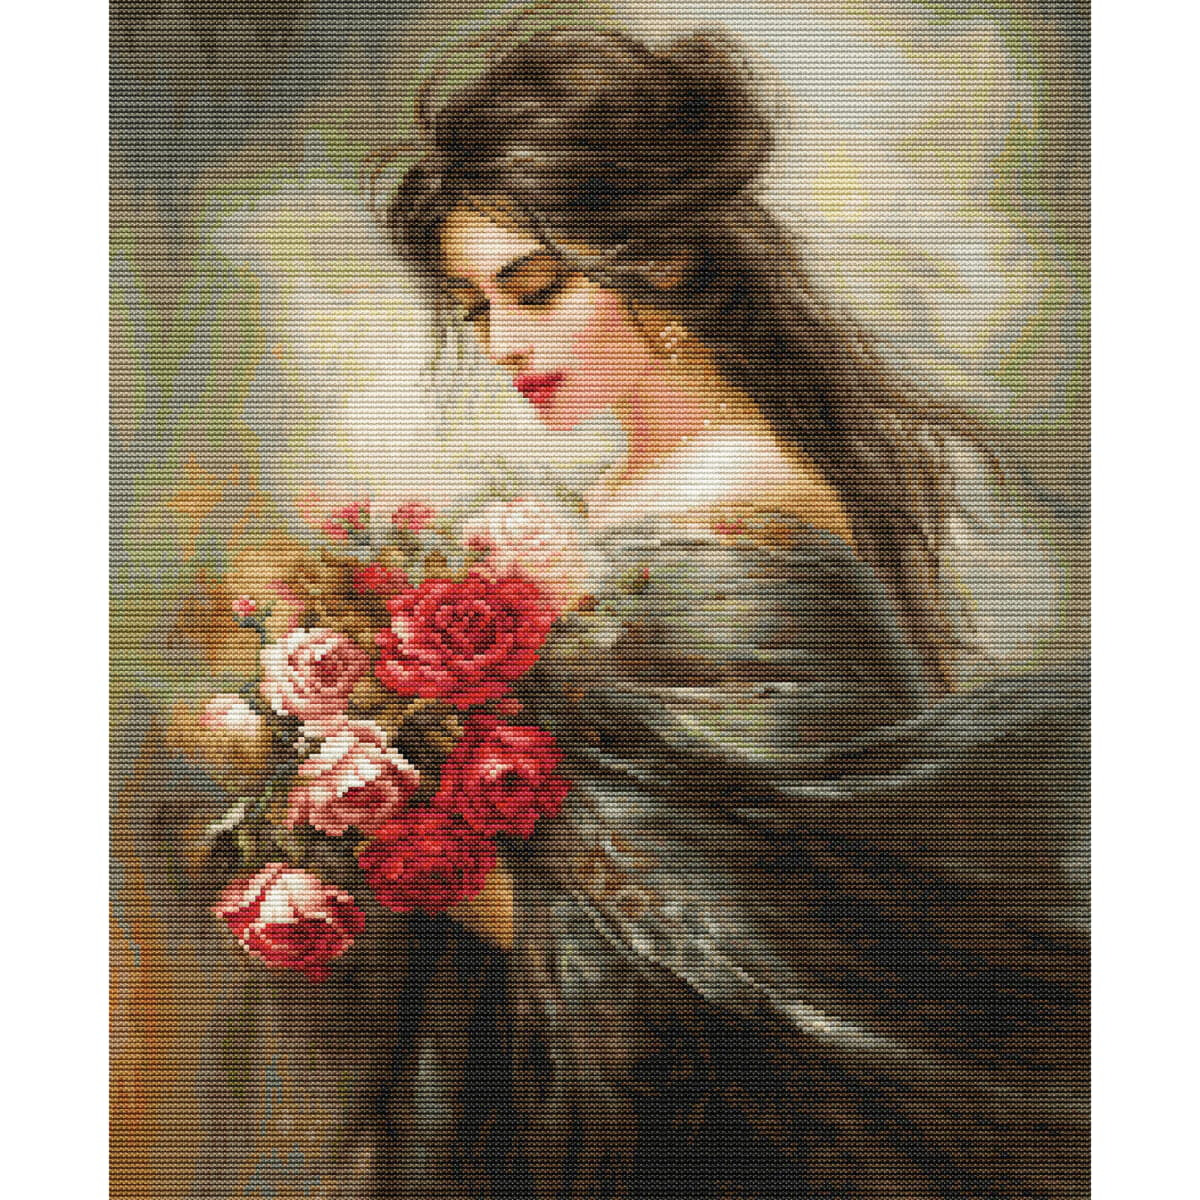 Un dipinto che ritrae una donna dai lunghi capelli scuri,...